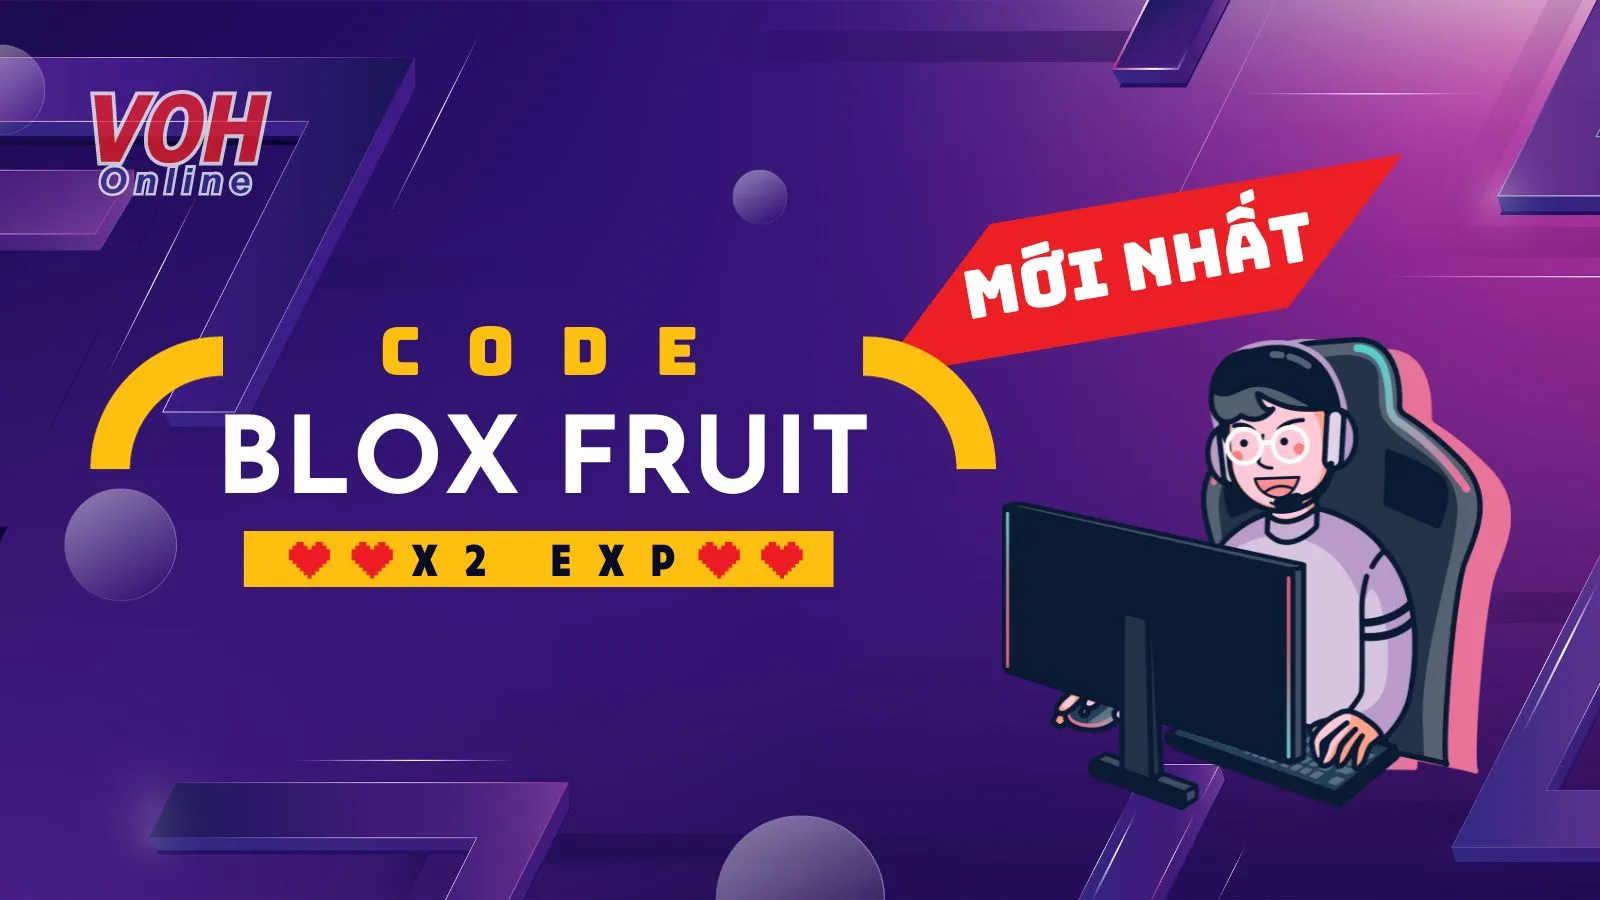 Code Blox Fruits x2 exp mới nhất tháng 4-2023 #69gaming #bloxfruits #c